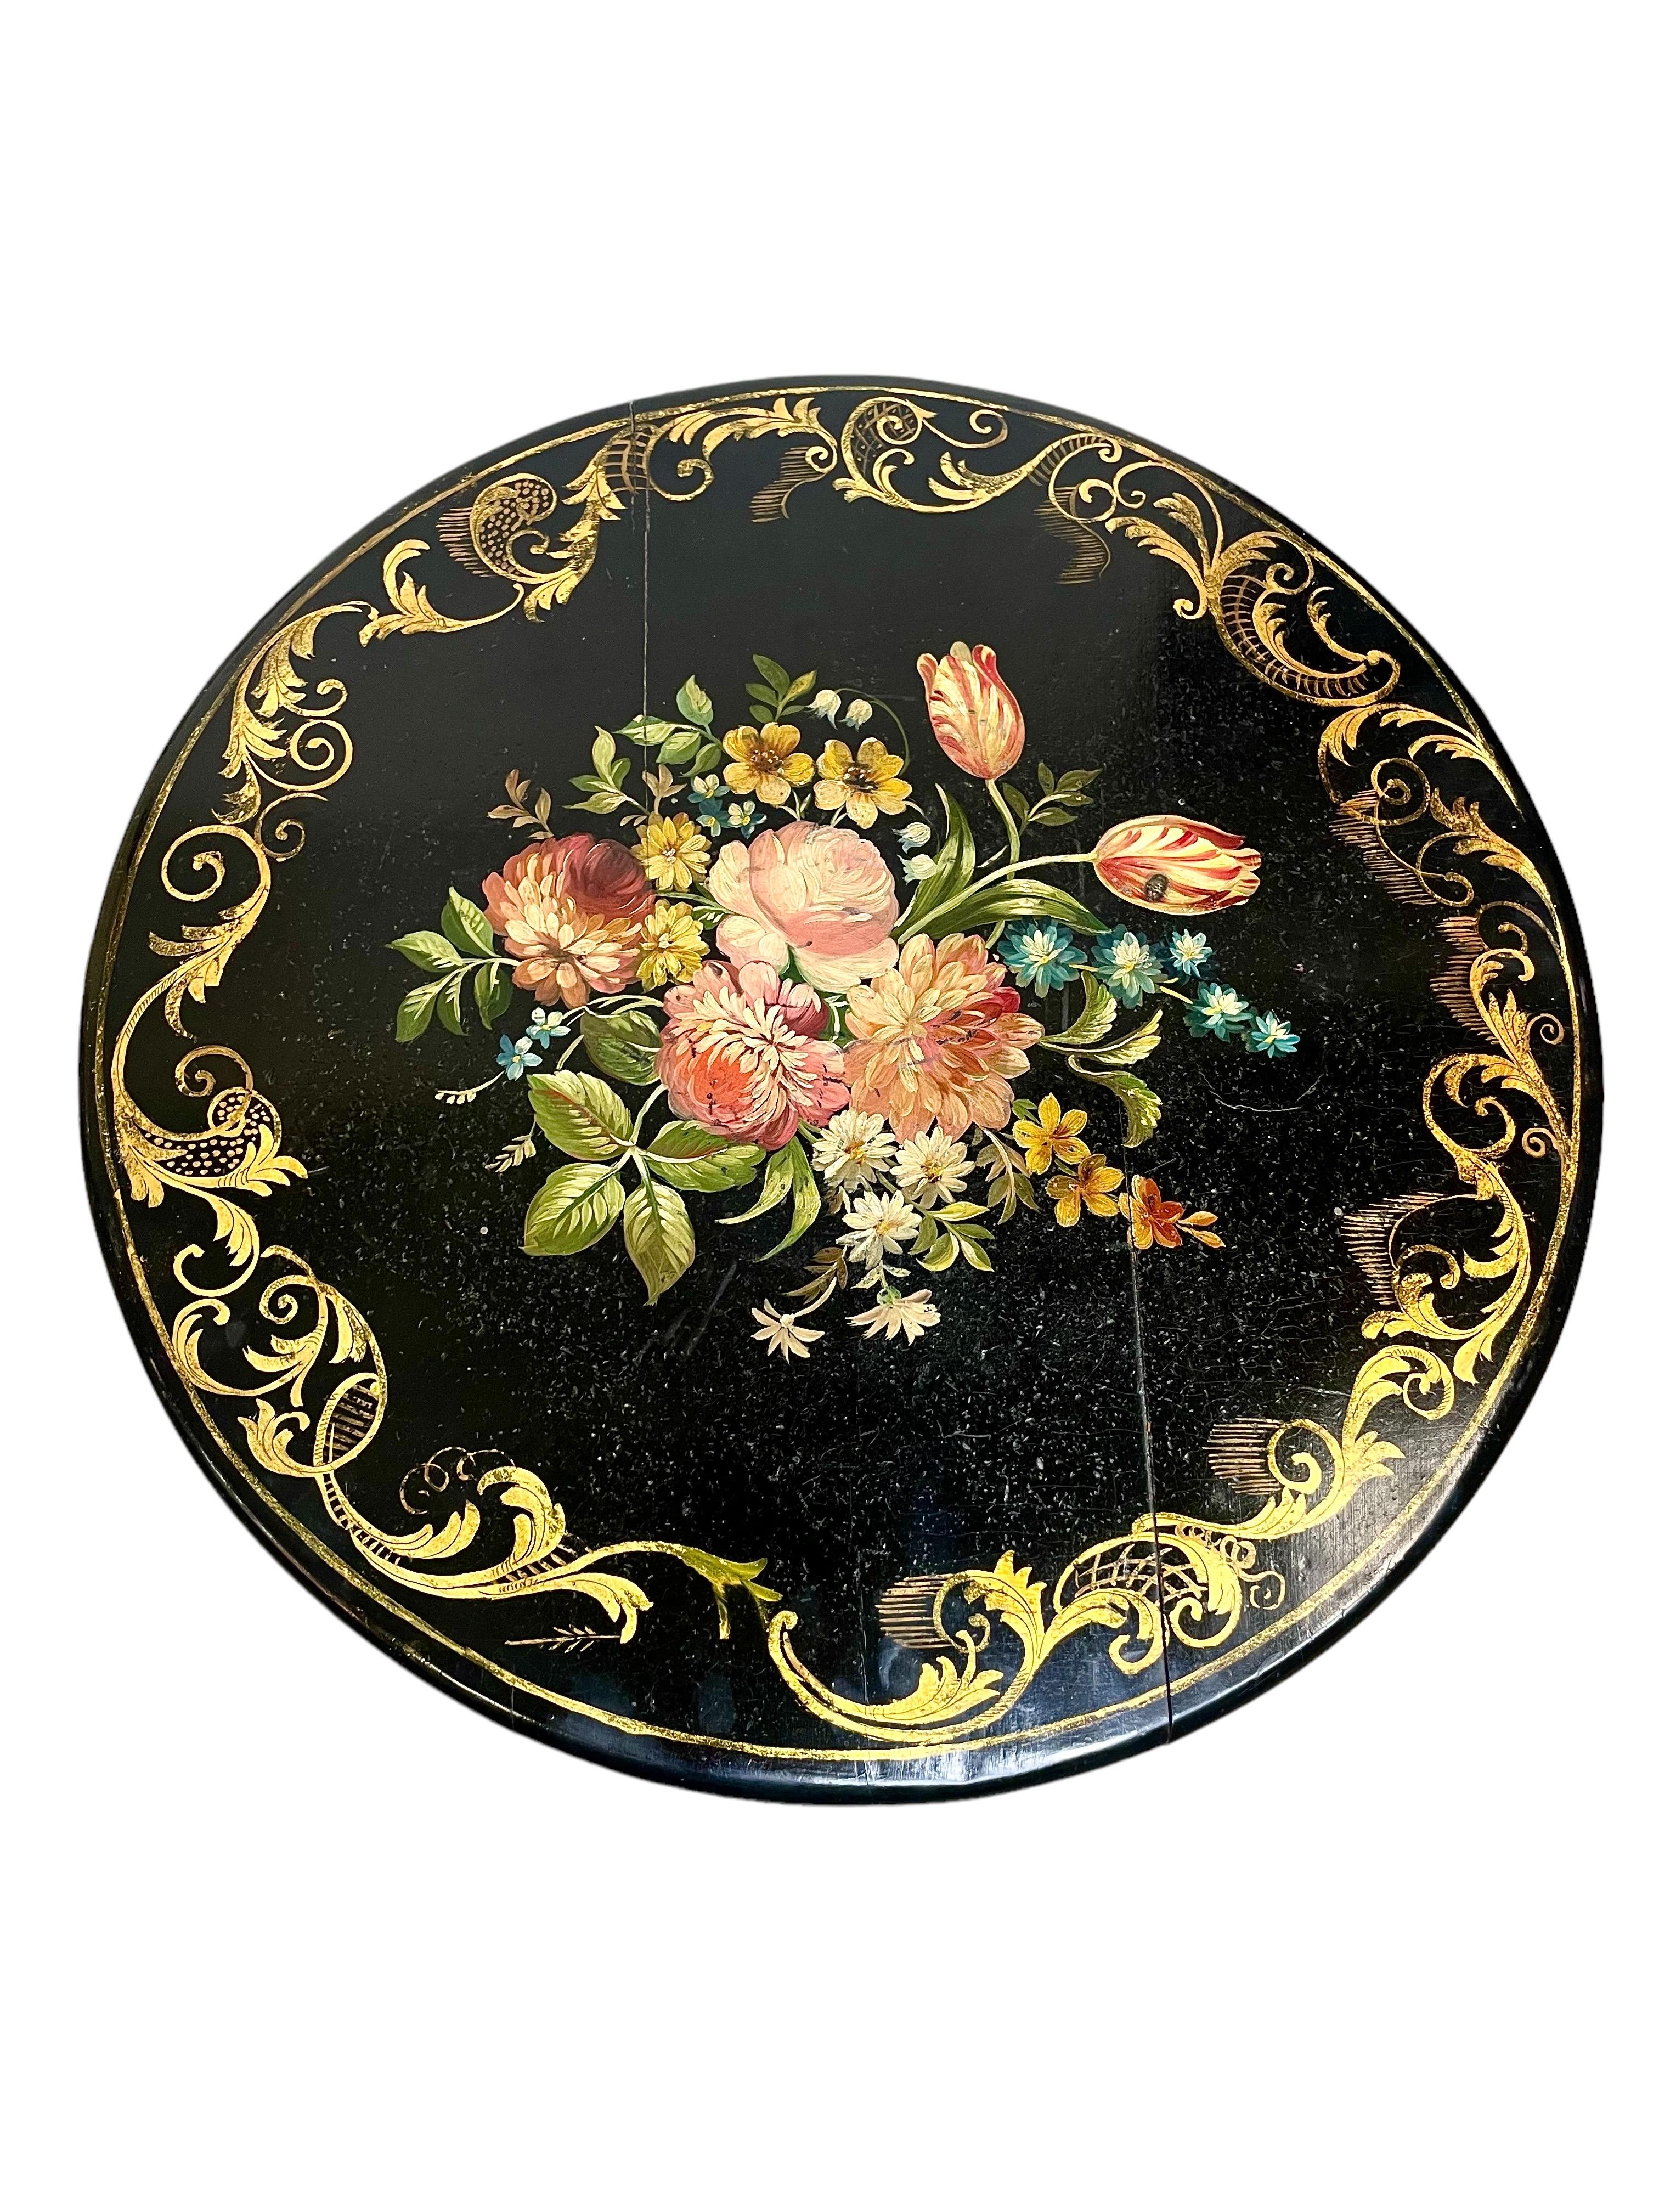 Ein atemberaubender ebonisierter Guéridon-Tisch im Stil von Napoleon III. mit einer lackierten, runden Platte und einem wirbelnden, vergoldeten Paketdekor am Rand sowie einem handgemalten, polychromen Muster aus wilden Blumen und Blättern in der